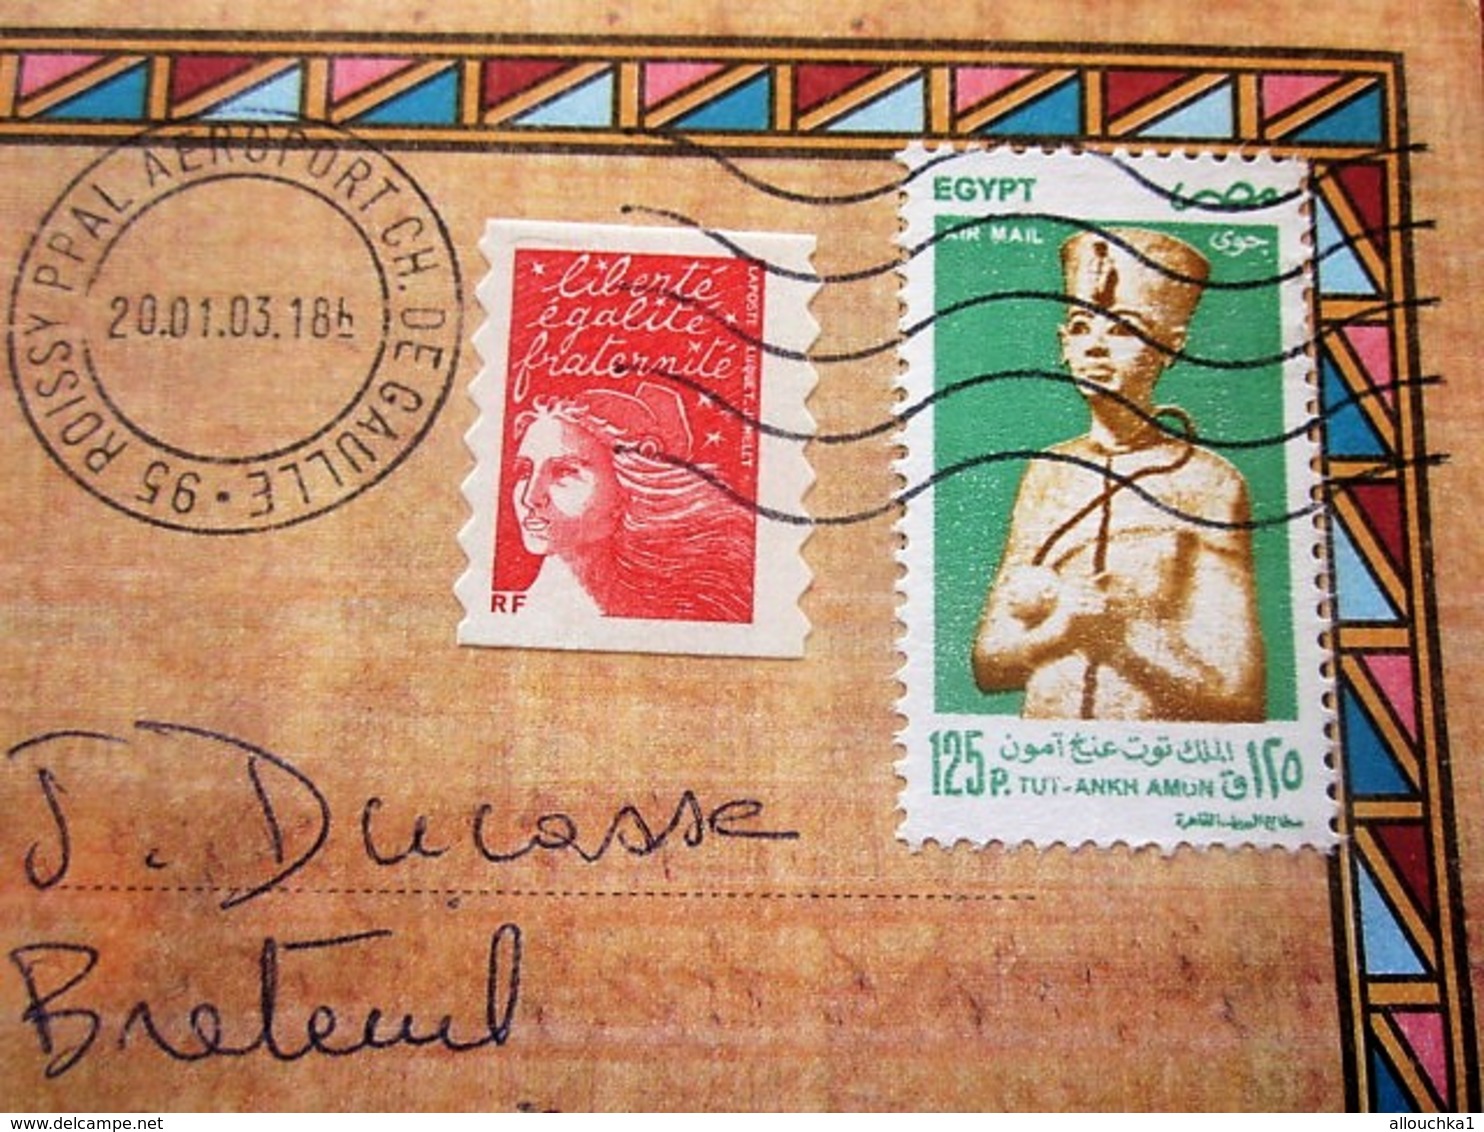 Curiosité Aff Composé Timbres Egyptien+français Posté Aéroport Orly CDG Plutot Qu'au Caire Lettre+Carte Postale Egypte - Lettres & Documents